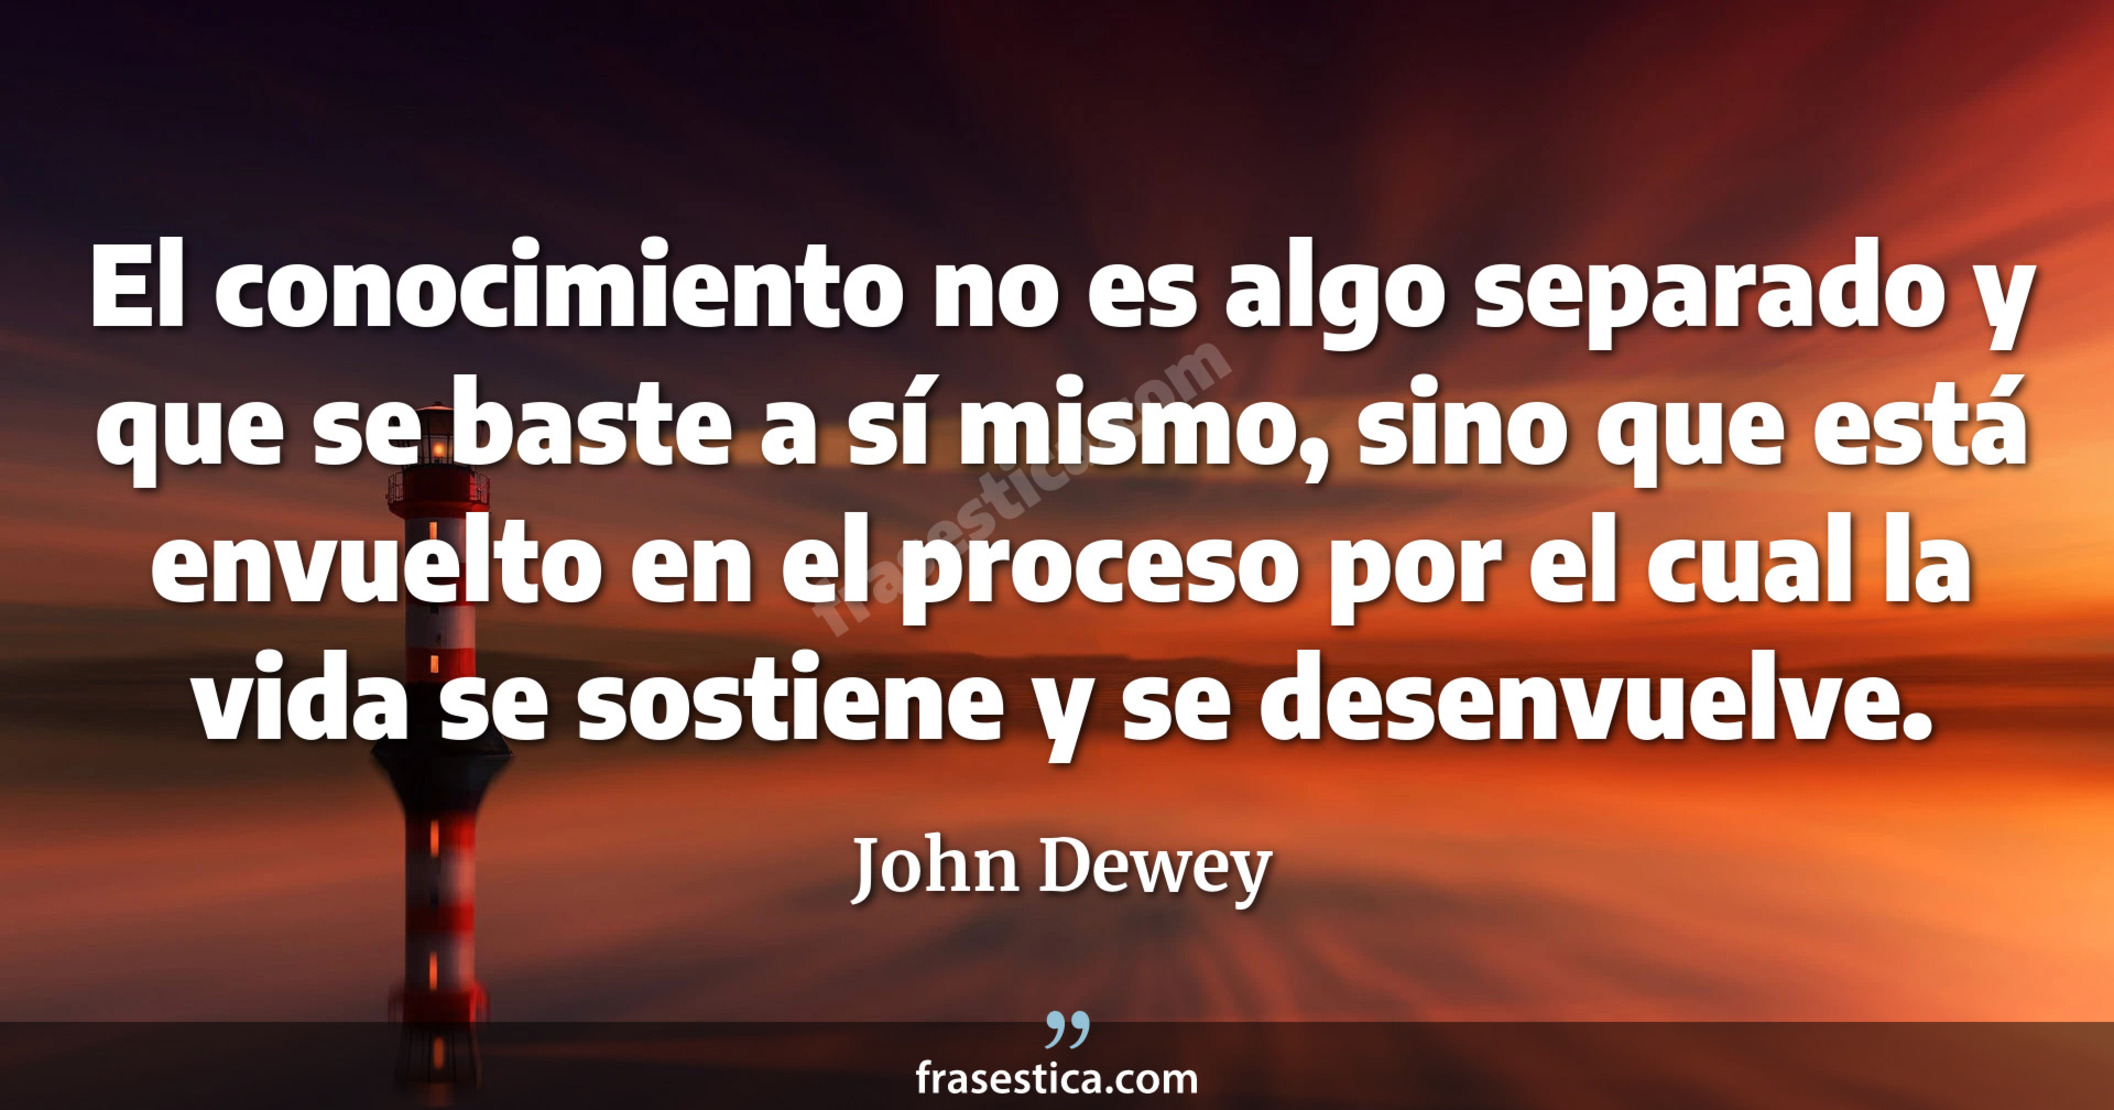 El conocimiento no es algo separado y que se baste a sí mismo, sino que está envuelto en el proceso por el cual la vida se sostiene y se desenvuelve. - John Dewey